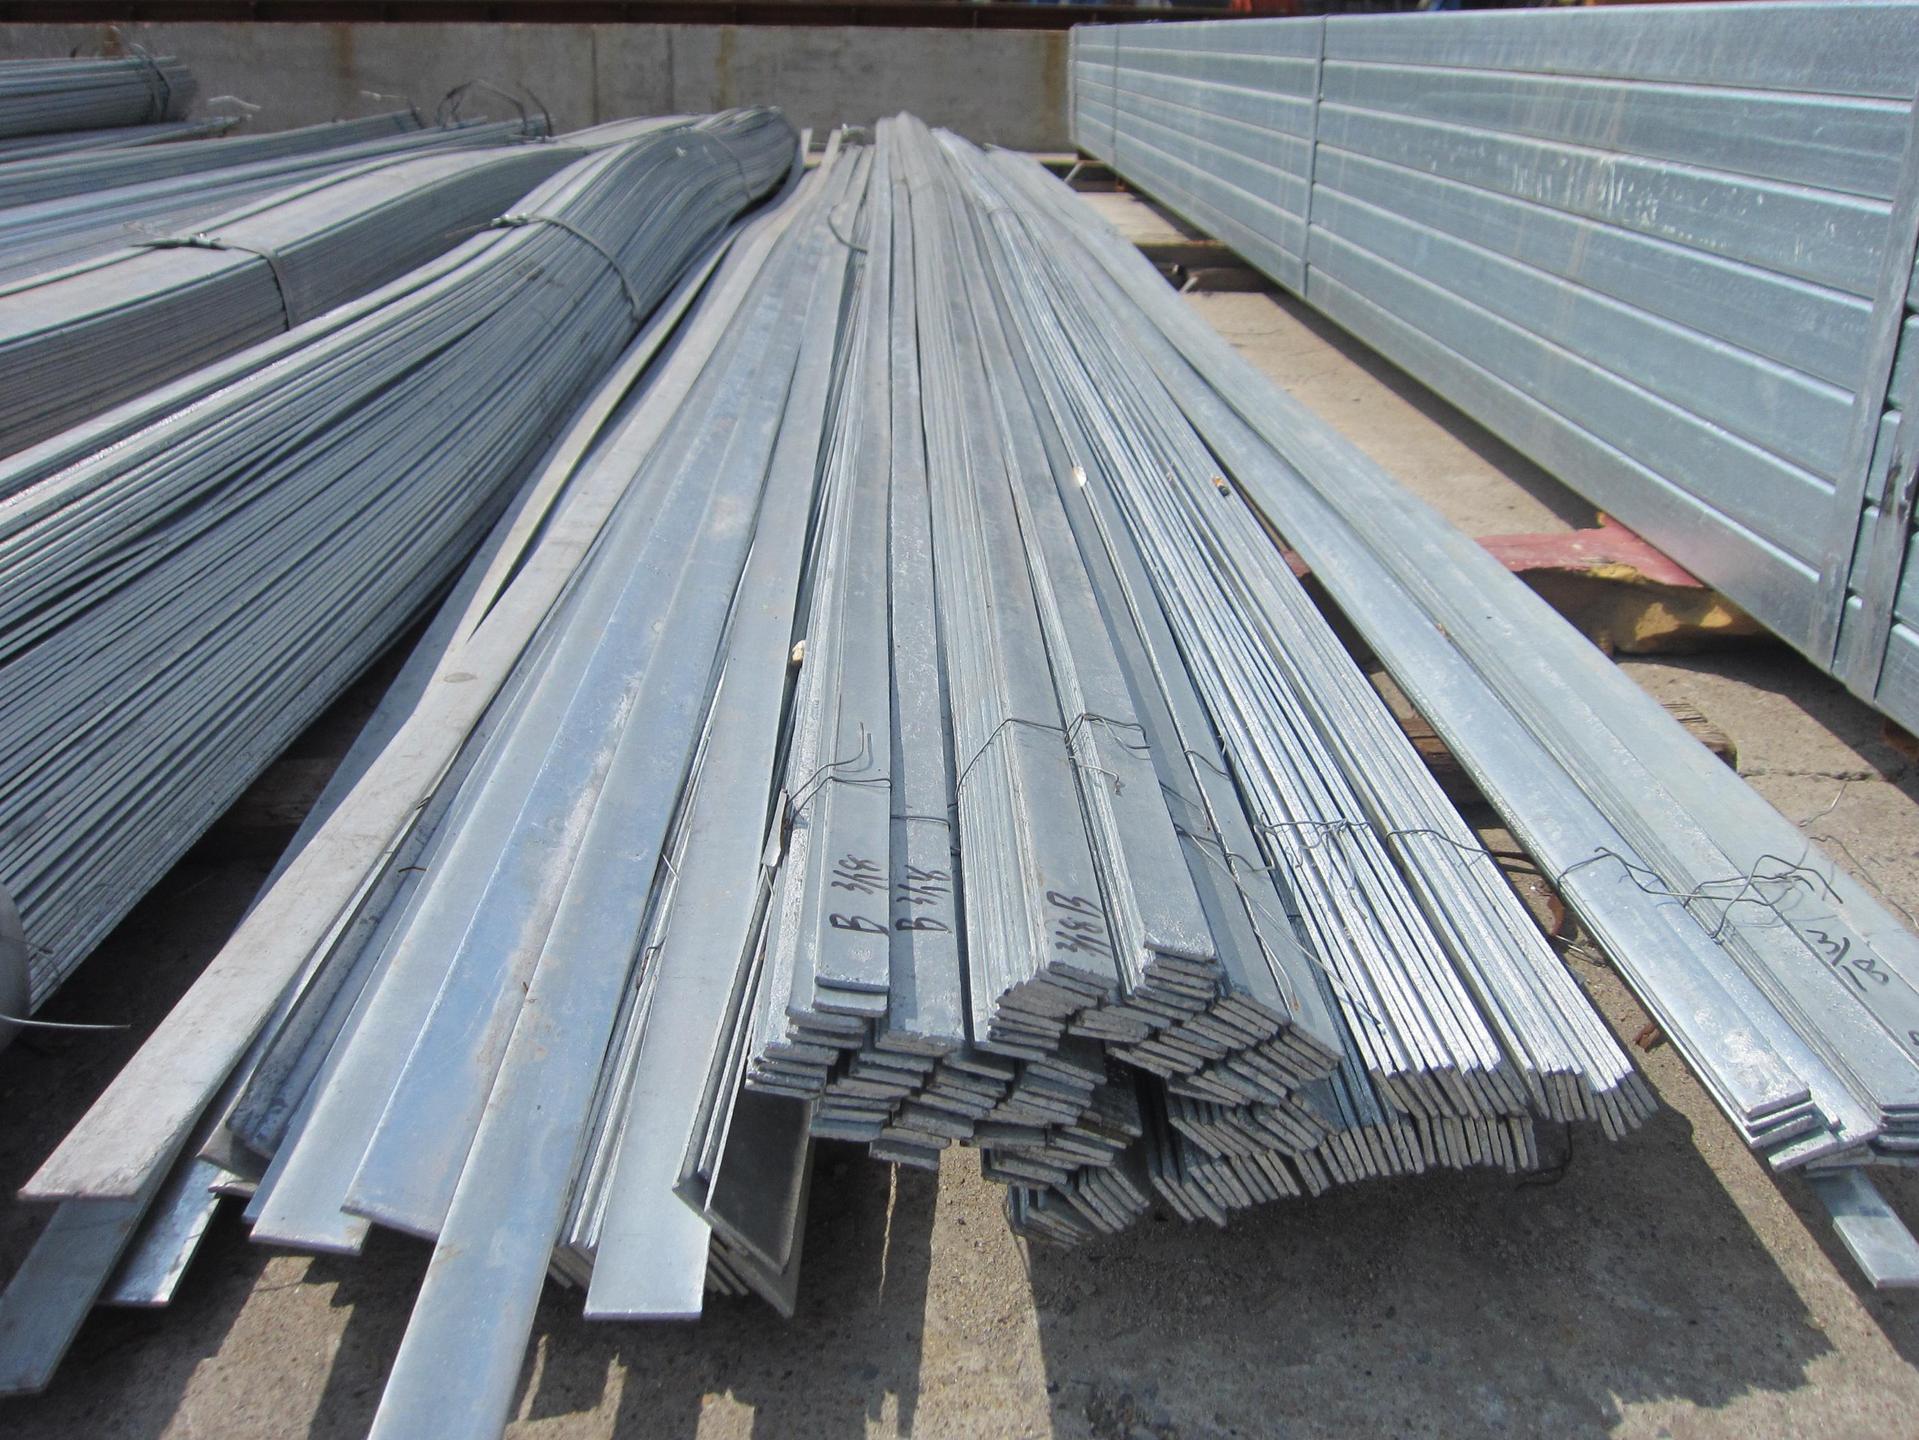 湖北荆州金属制品生产厂家现有现货5000吨扁钢规格型号齐全质优价廉期待您的来电